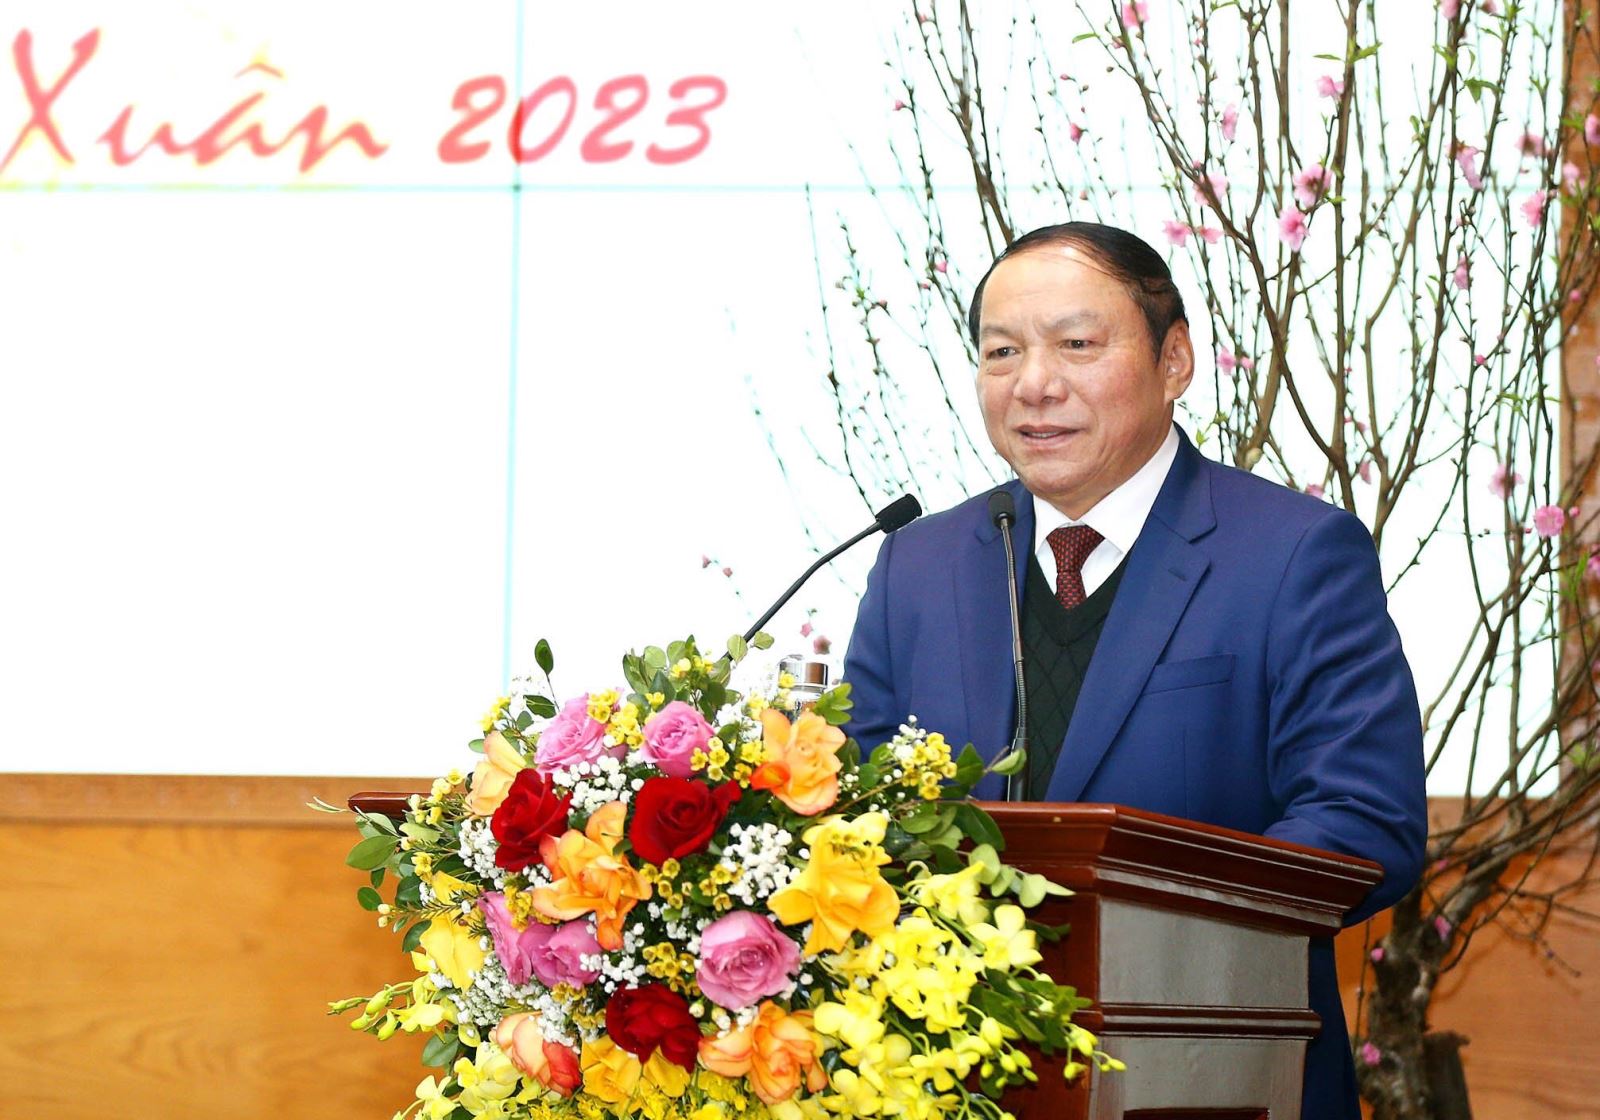 Bộ trưởng Nguyễn Văn Hùng: Quyết liệt hành động nhưng phải linh hoạt